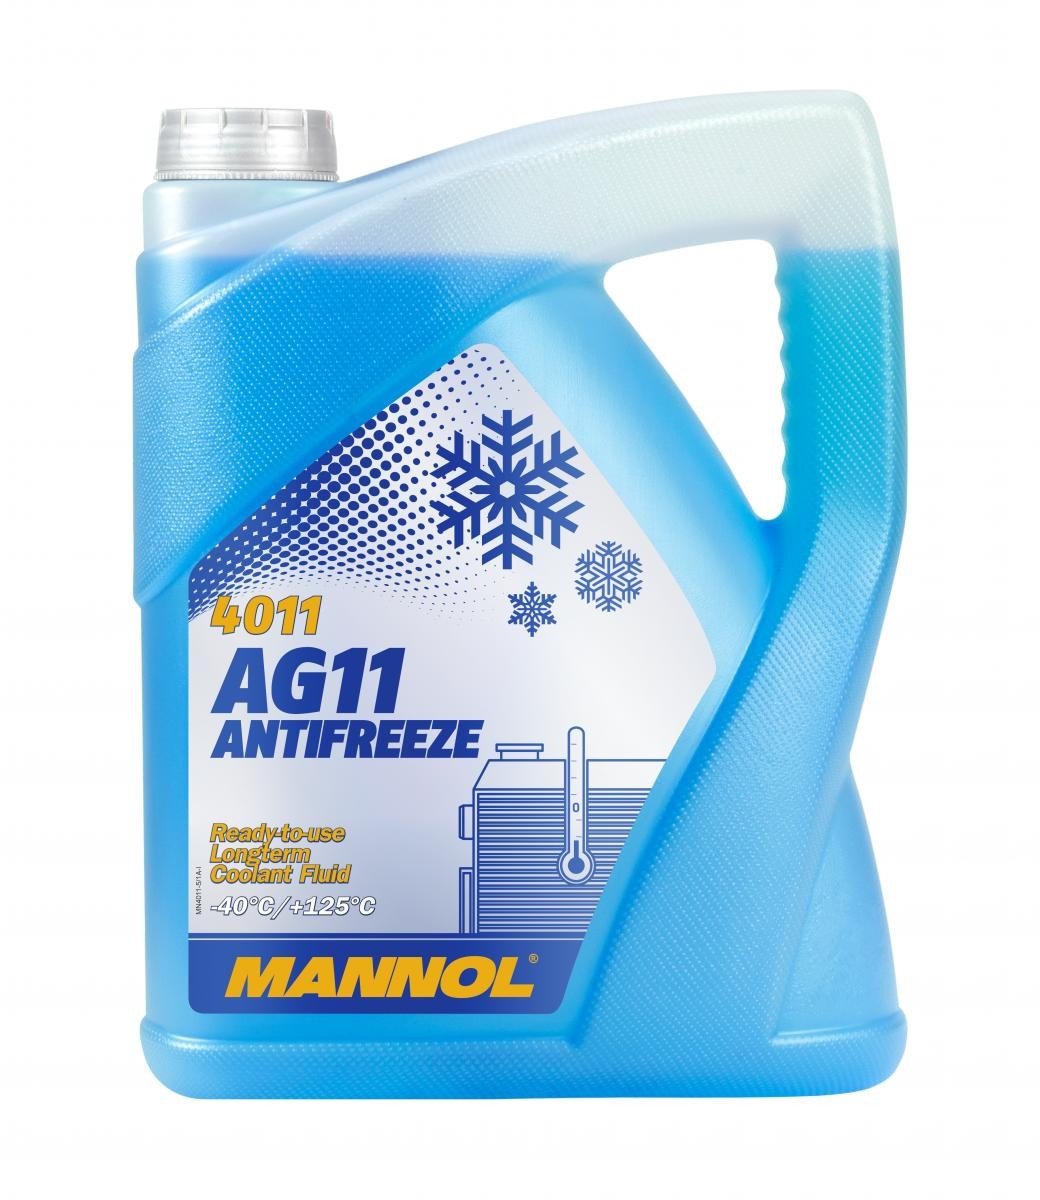 Naročite MN4011-5 MANNOL Sredstvo proti zmrzovanju hladilne vode (antifriz) zdaj